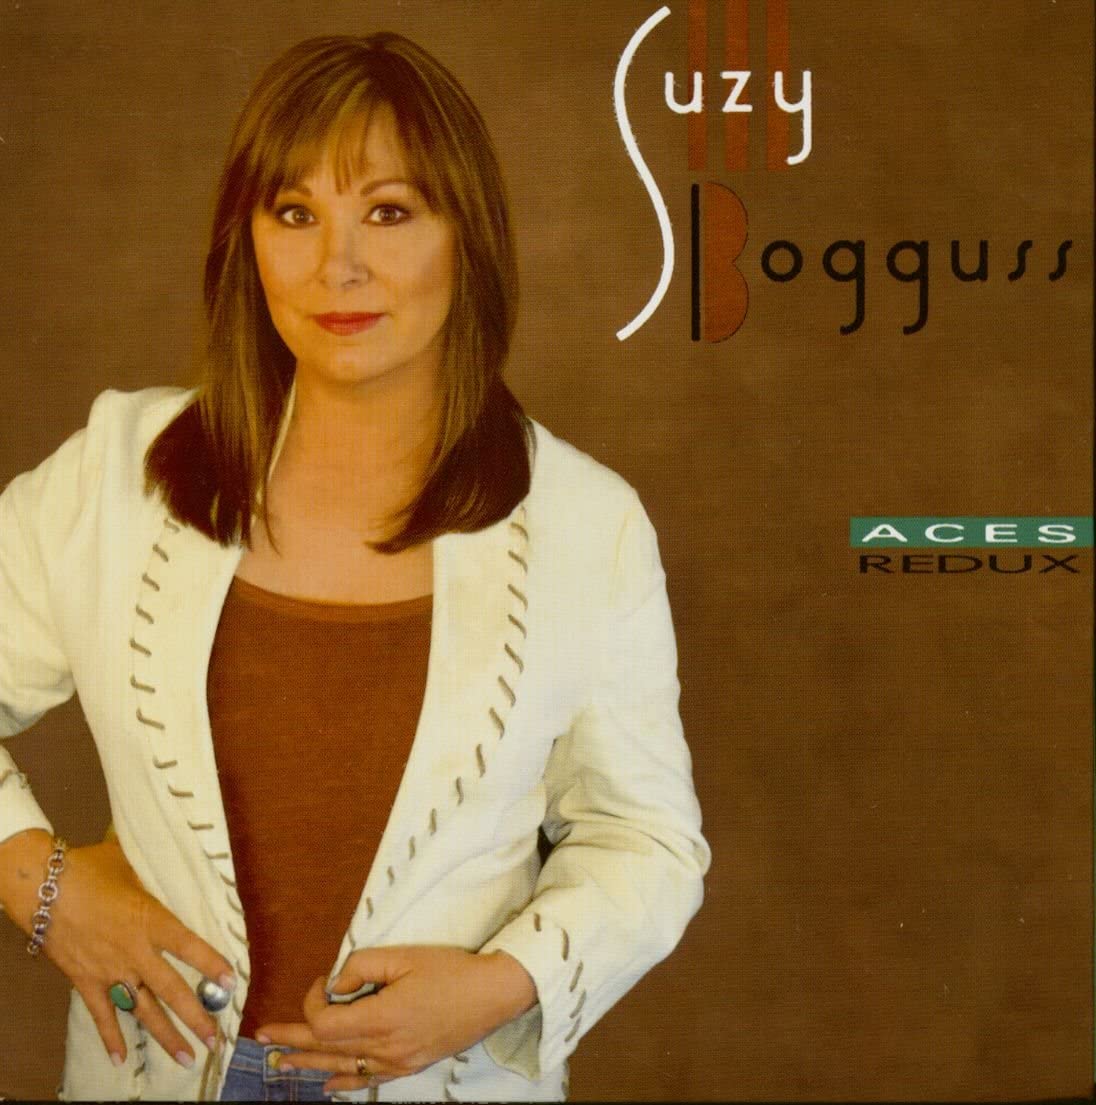 Suzy Bogguss - Aces Redux Album Cover